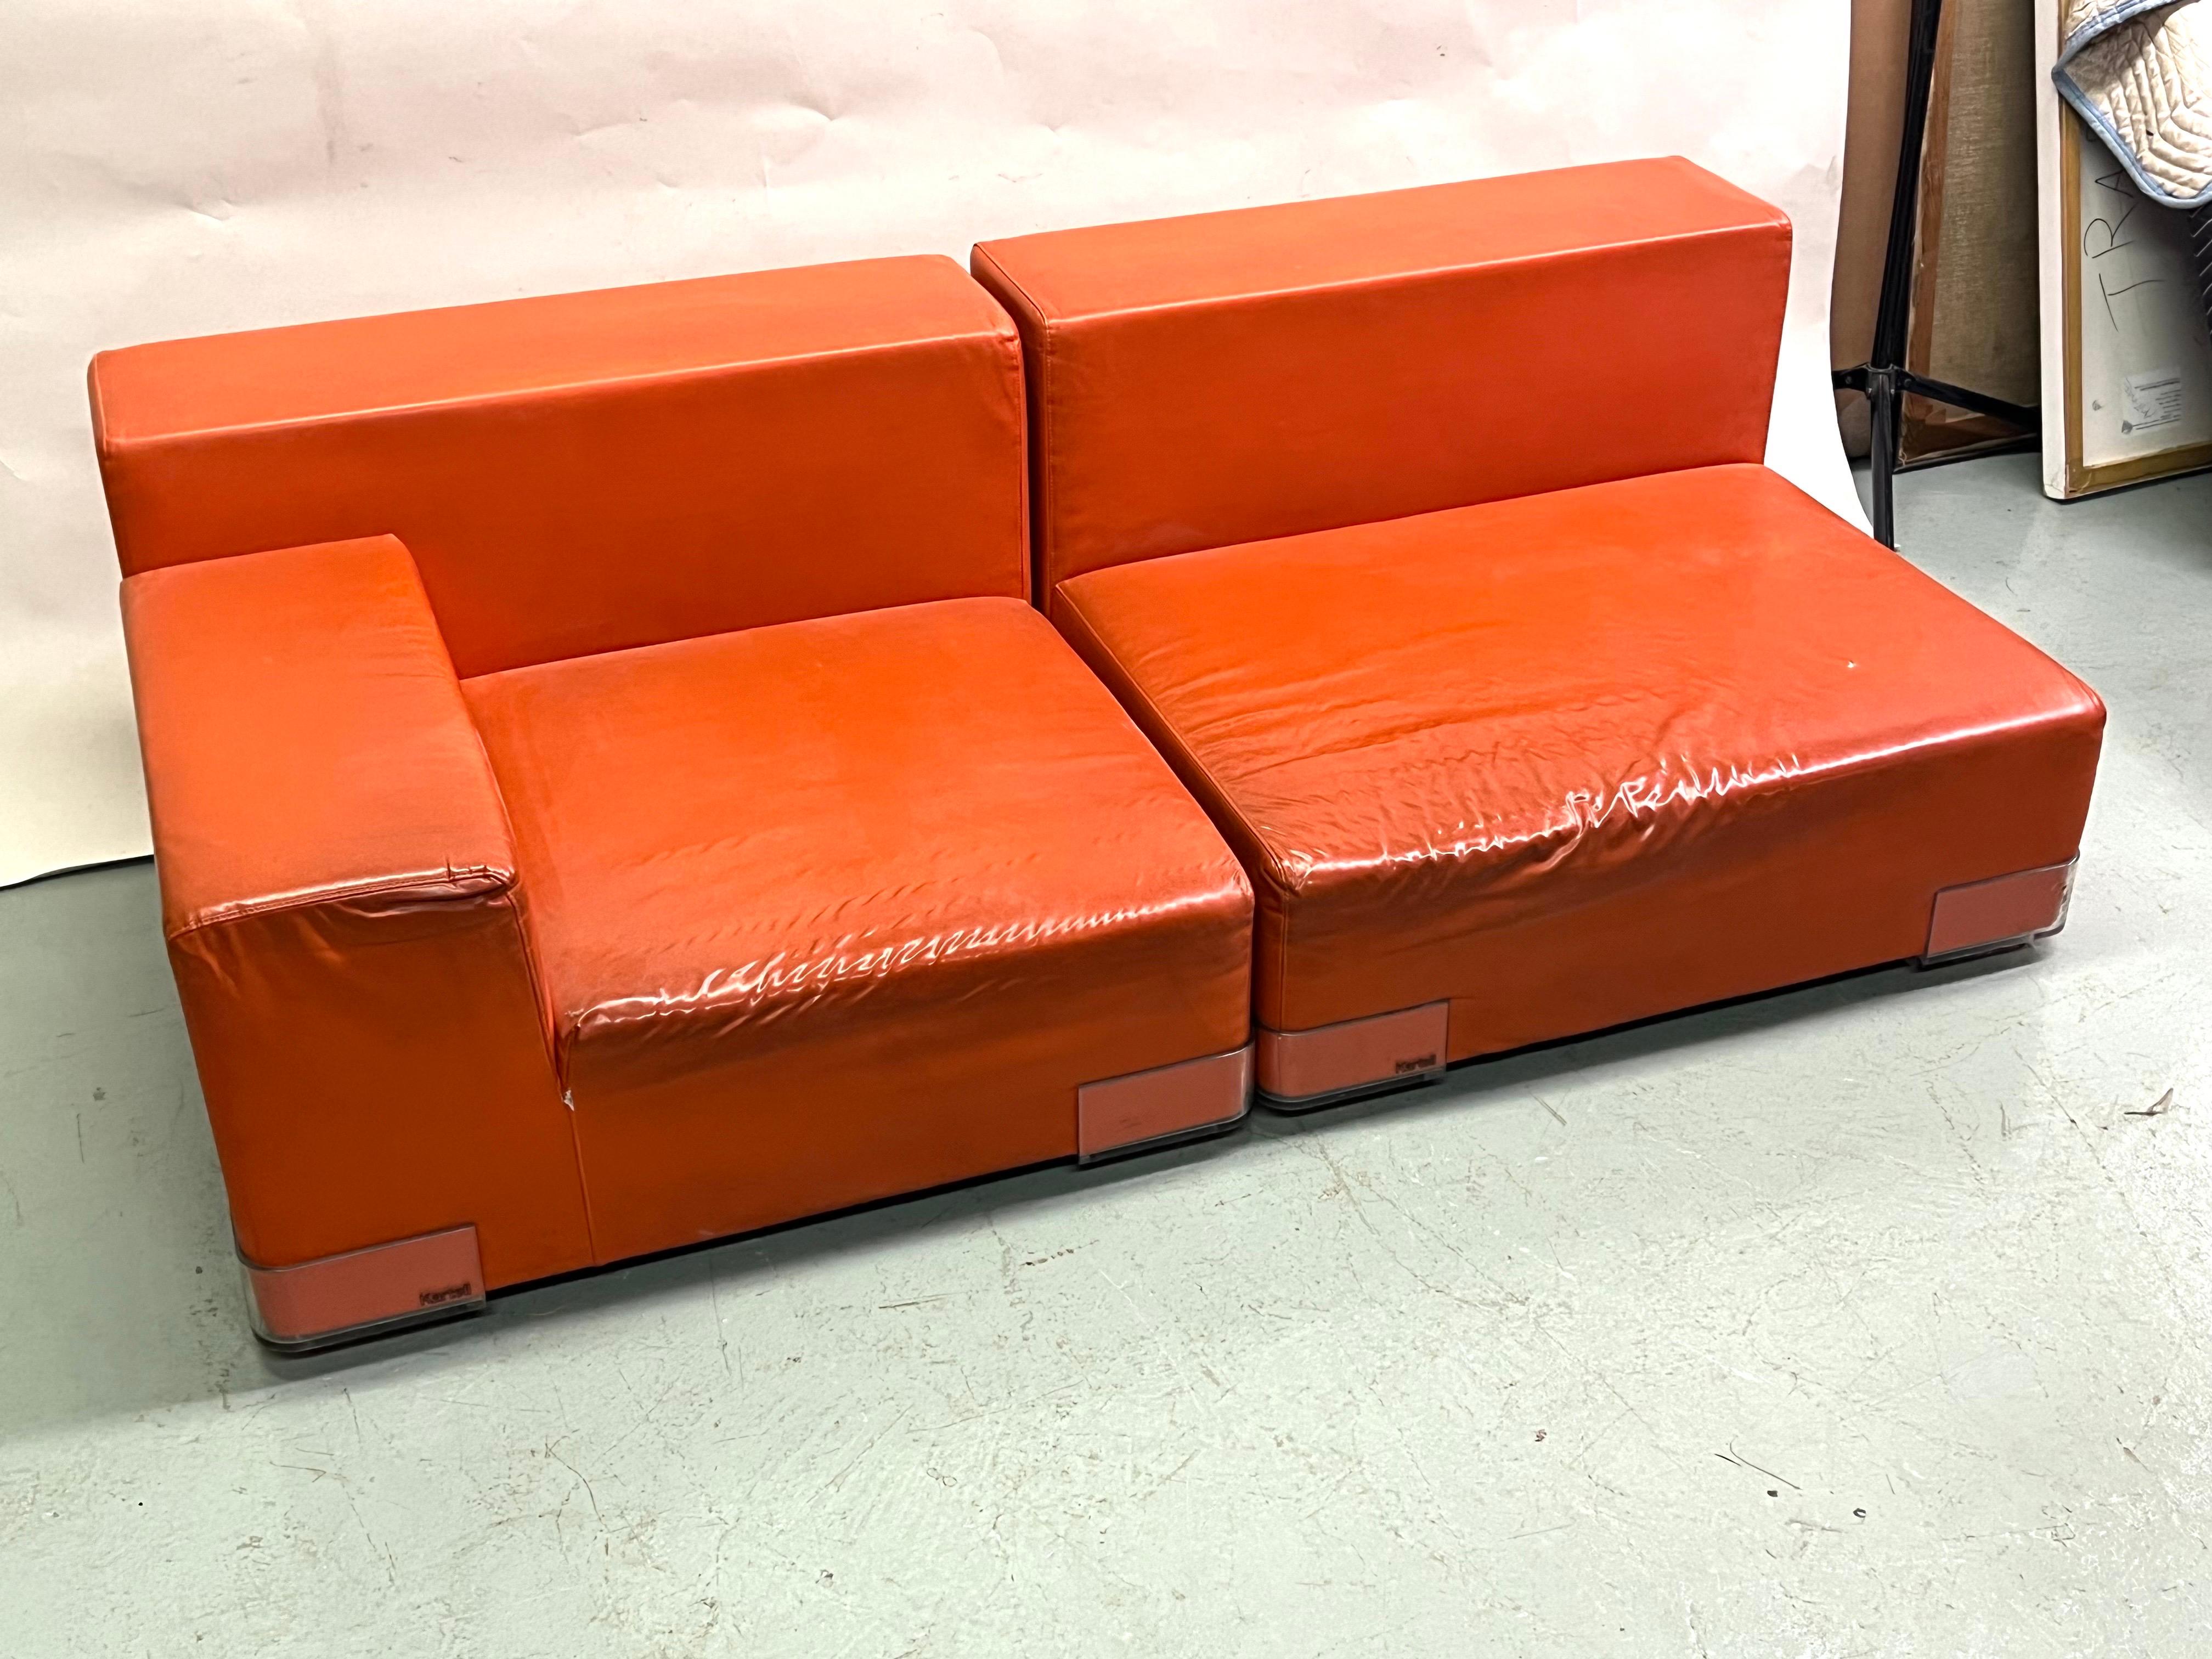 Canapé / sofa / paire de chaises longues iconiques du milieu du siècle dernier de Piero Lissoni, de forme carrée, basse, contemporaine et élégante, vers 1970-1975. Le canapé est modulable, multifonctionnel et formera une paire de chaises. Il est